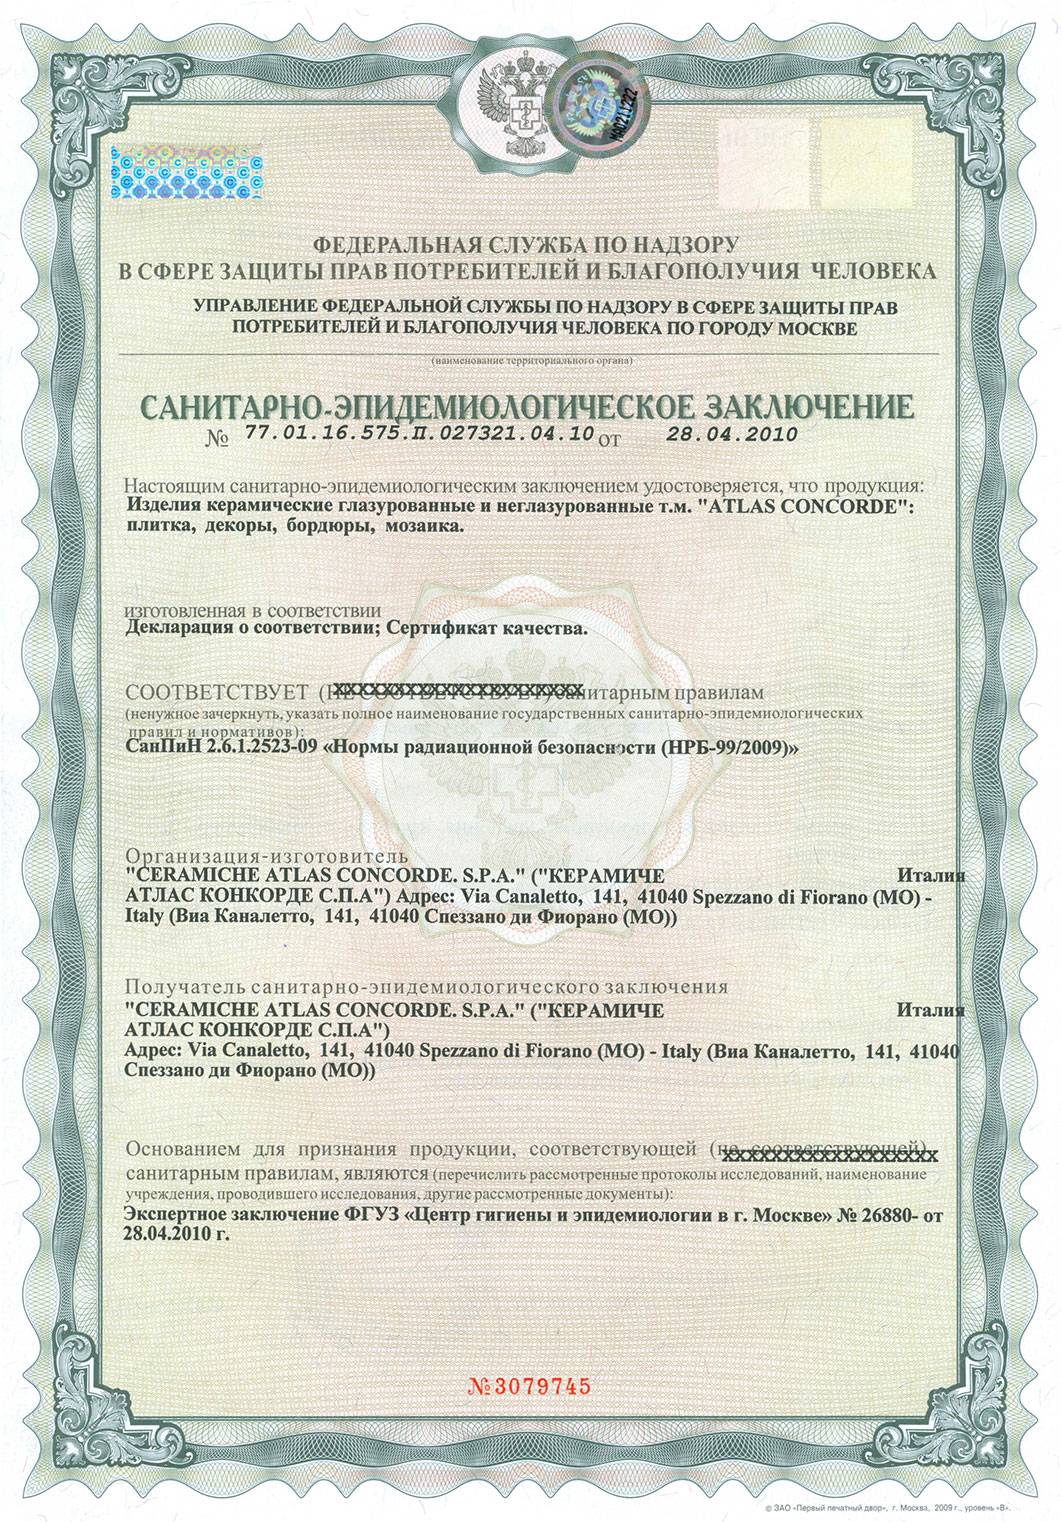 Сертификация эмалей, грунтовок, олифы